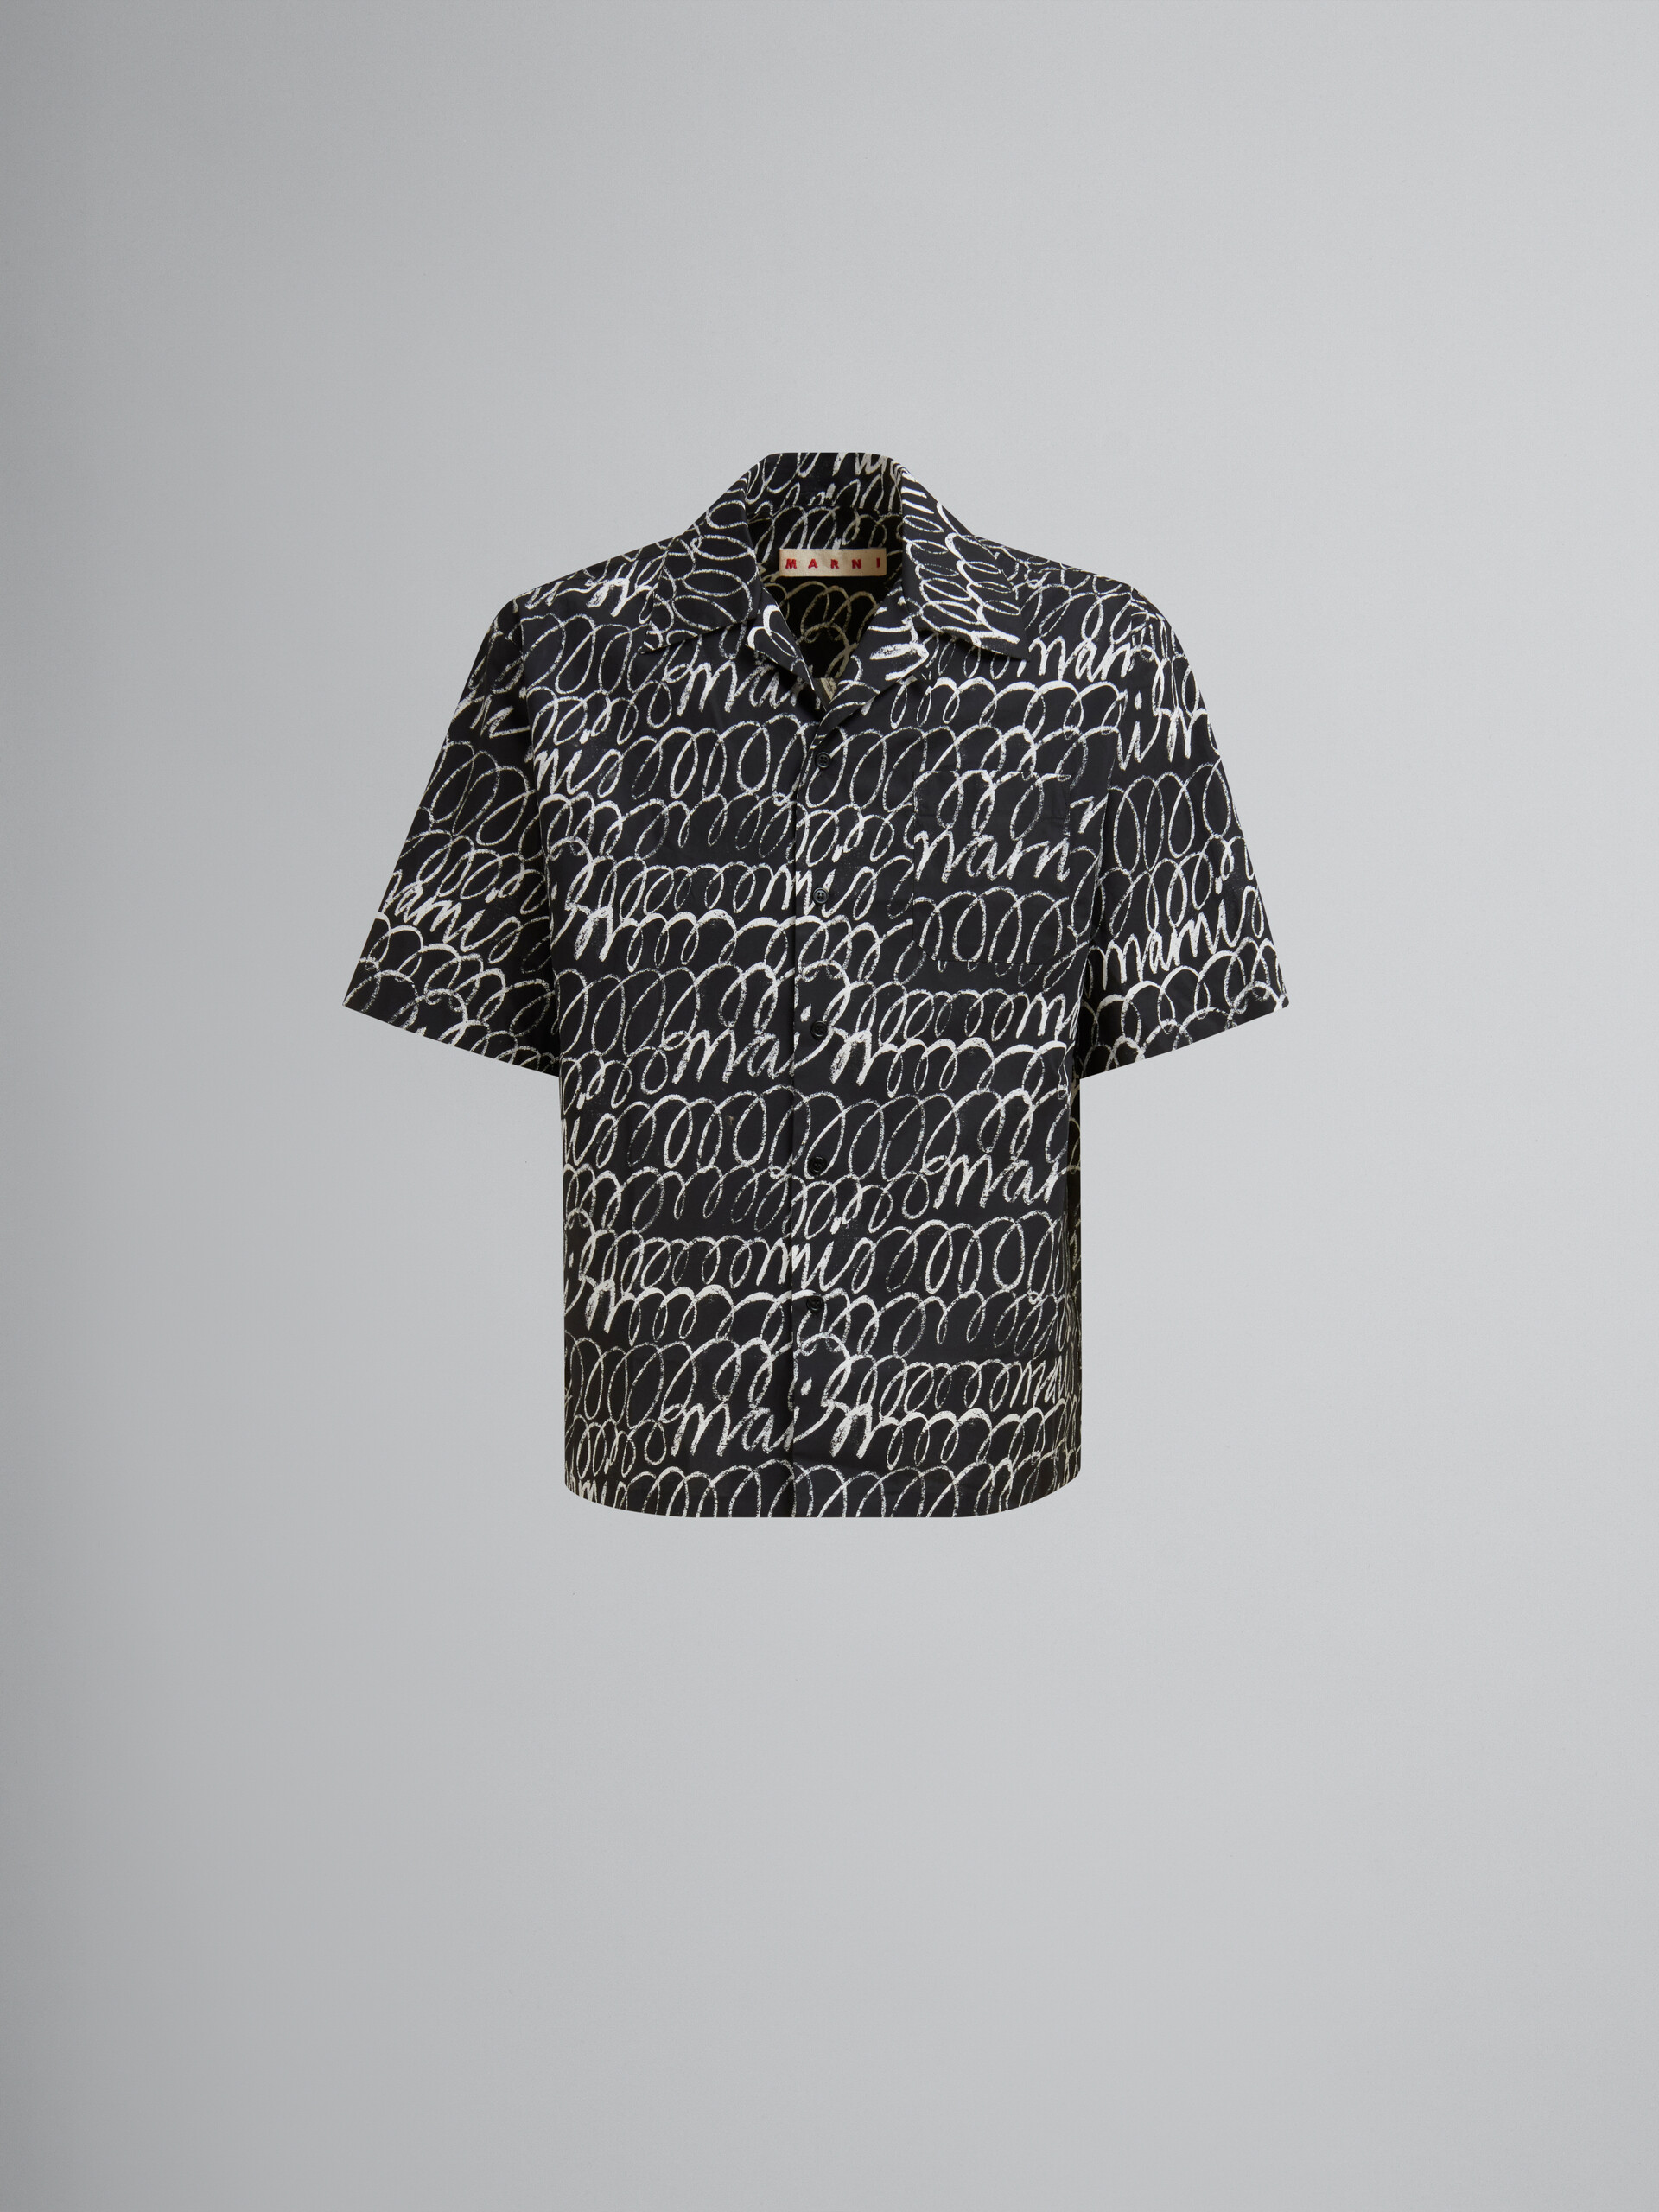 ブラック Marni Scribbleモチーフ ポプリン製 ボーリングシャツ - シャツ - Image 1